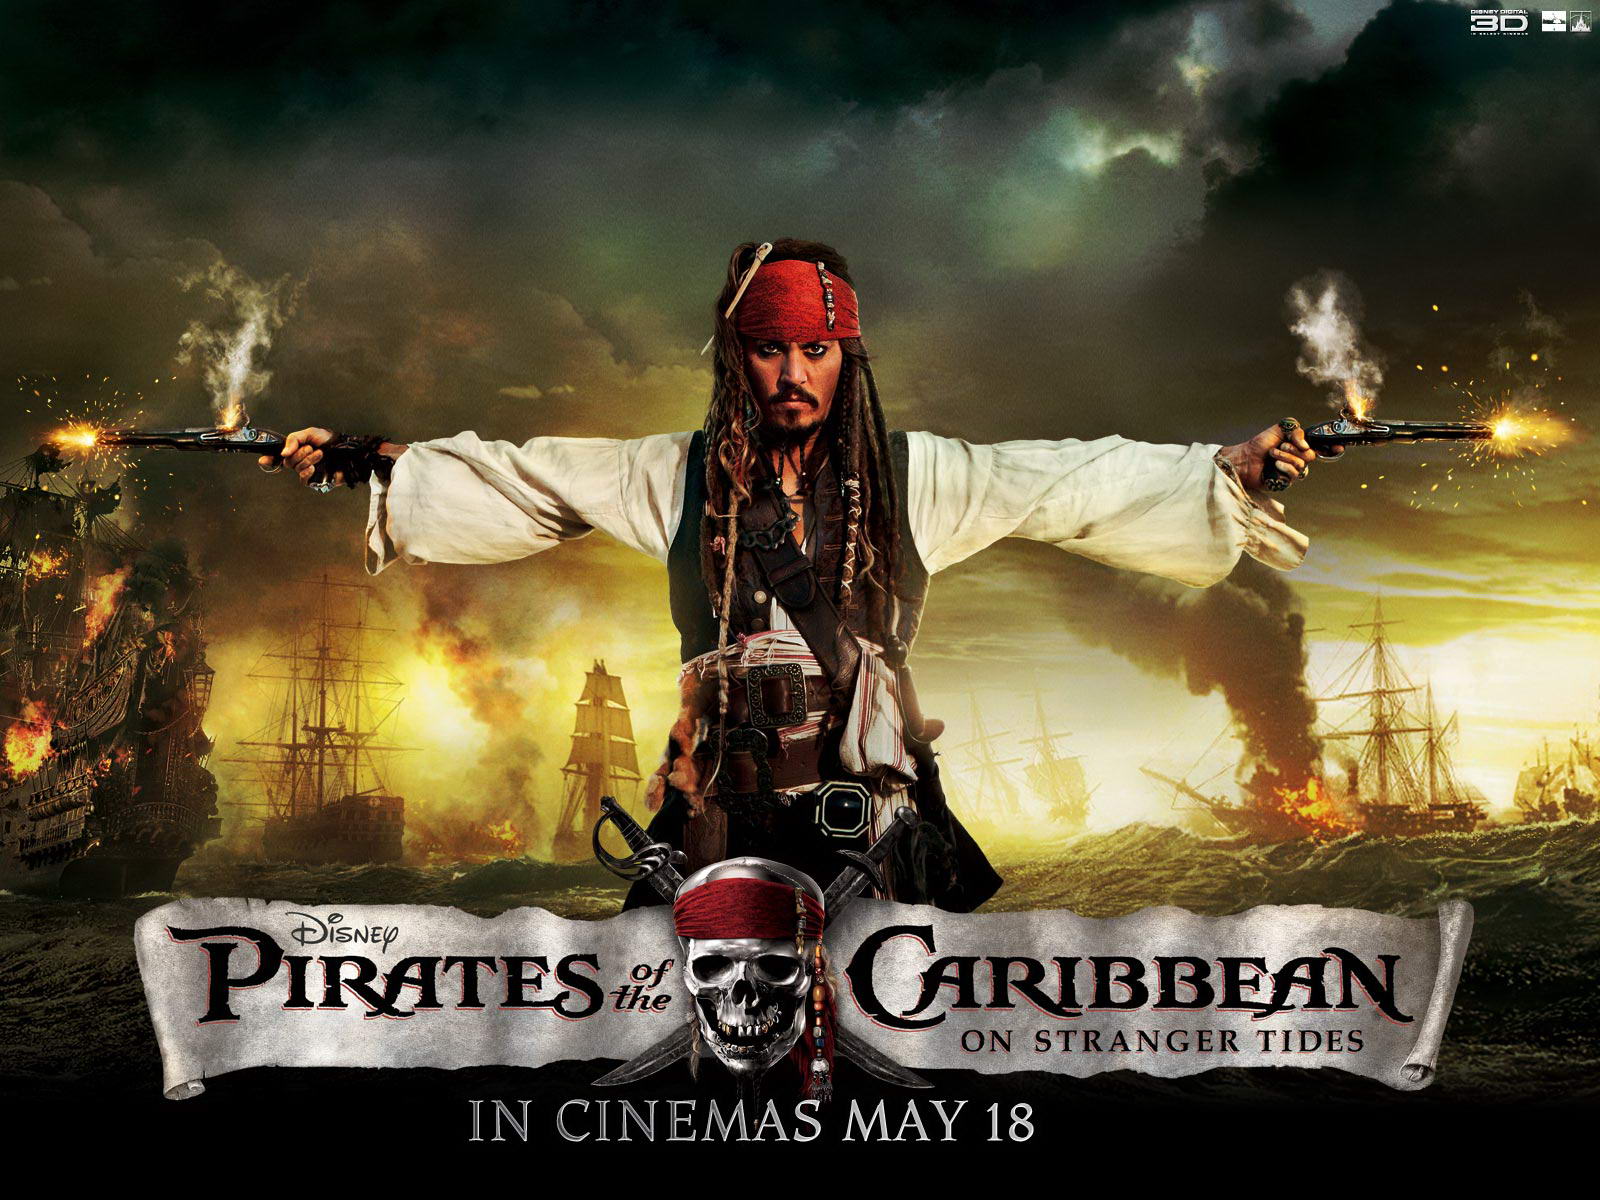 Piratas del Caribe: Navegando aguas misteriosas